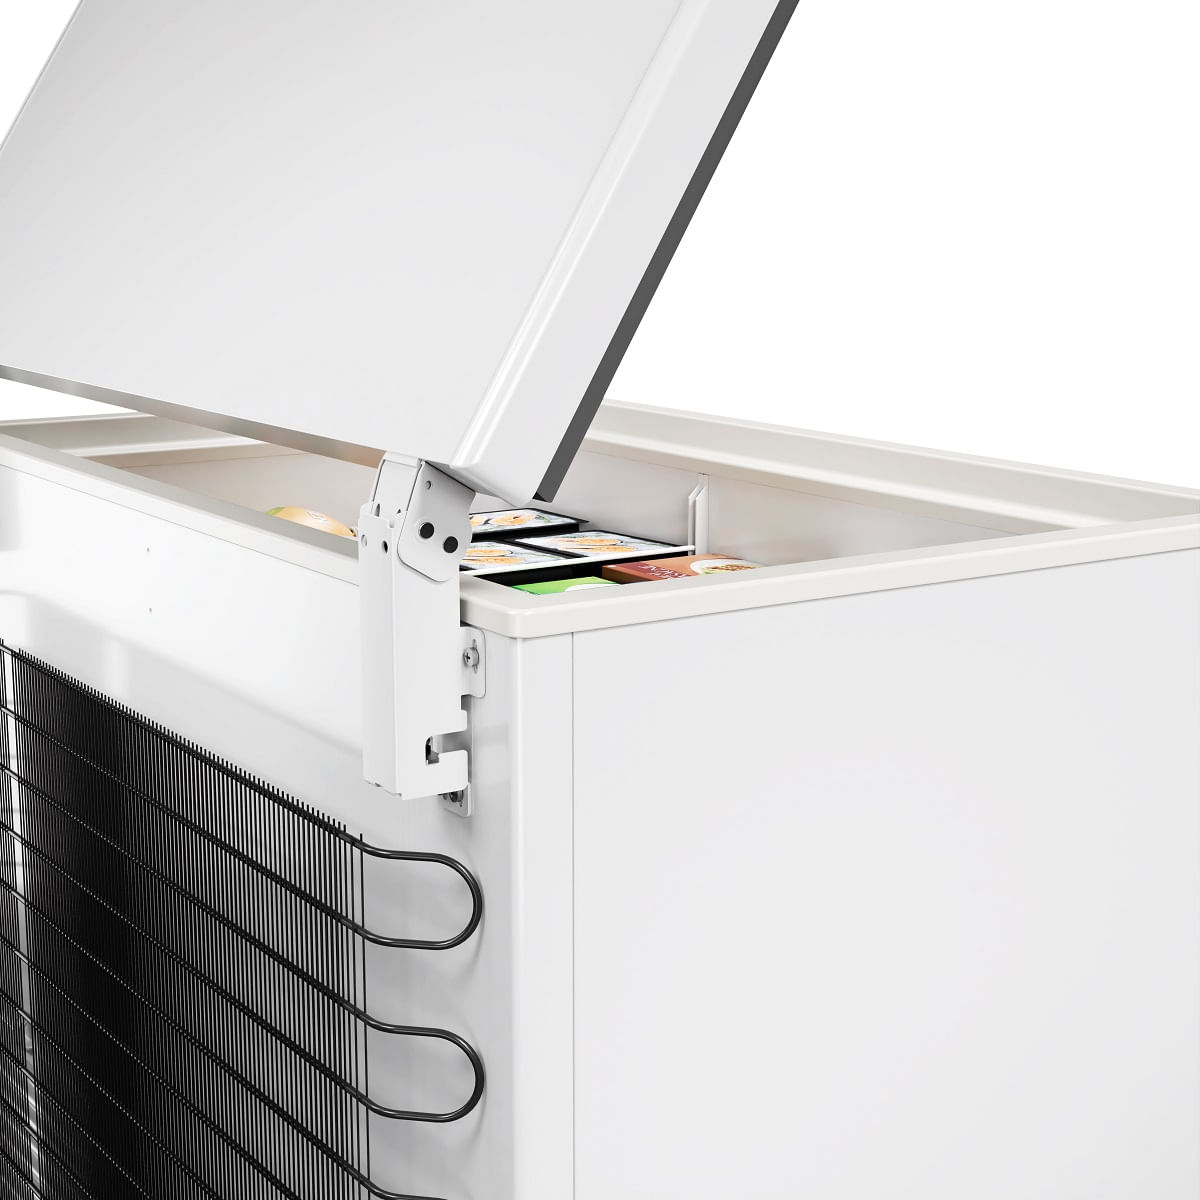 freezer-refrigerador-horizontal-metalfrio-da302-110v-3.jpg